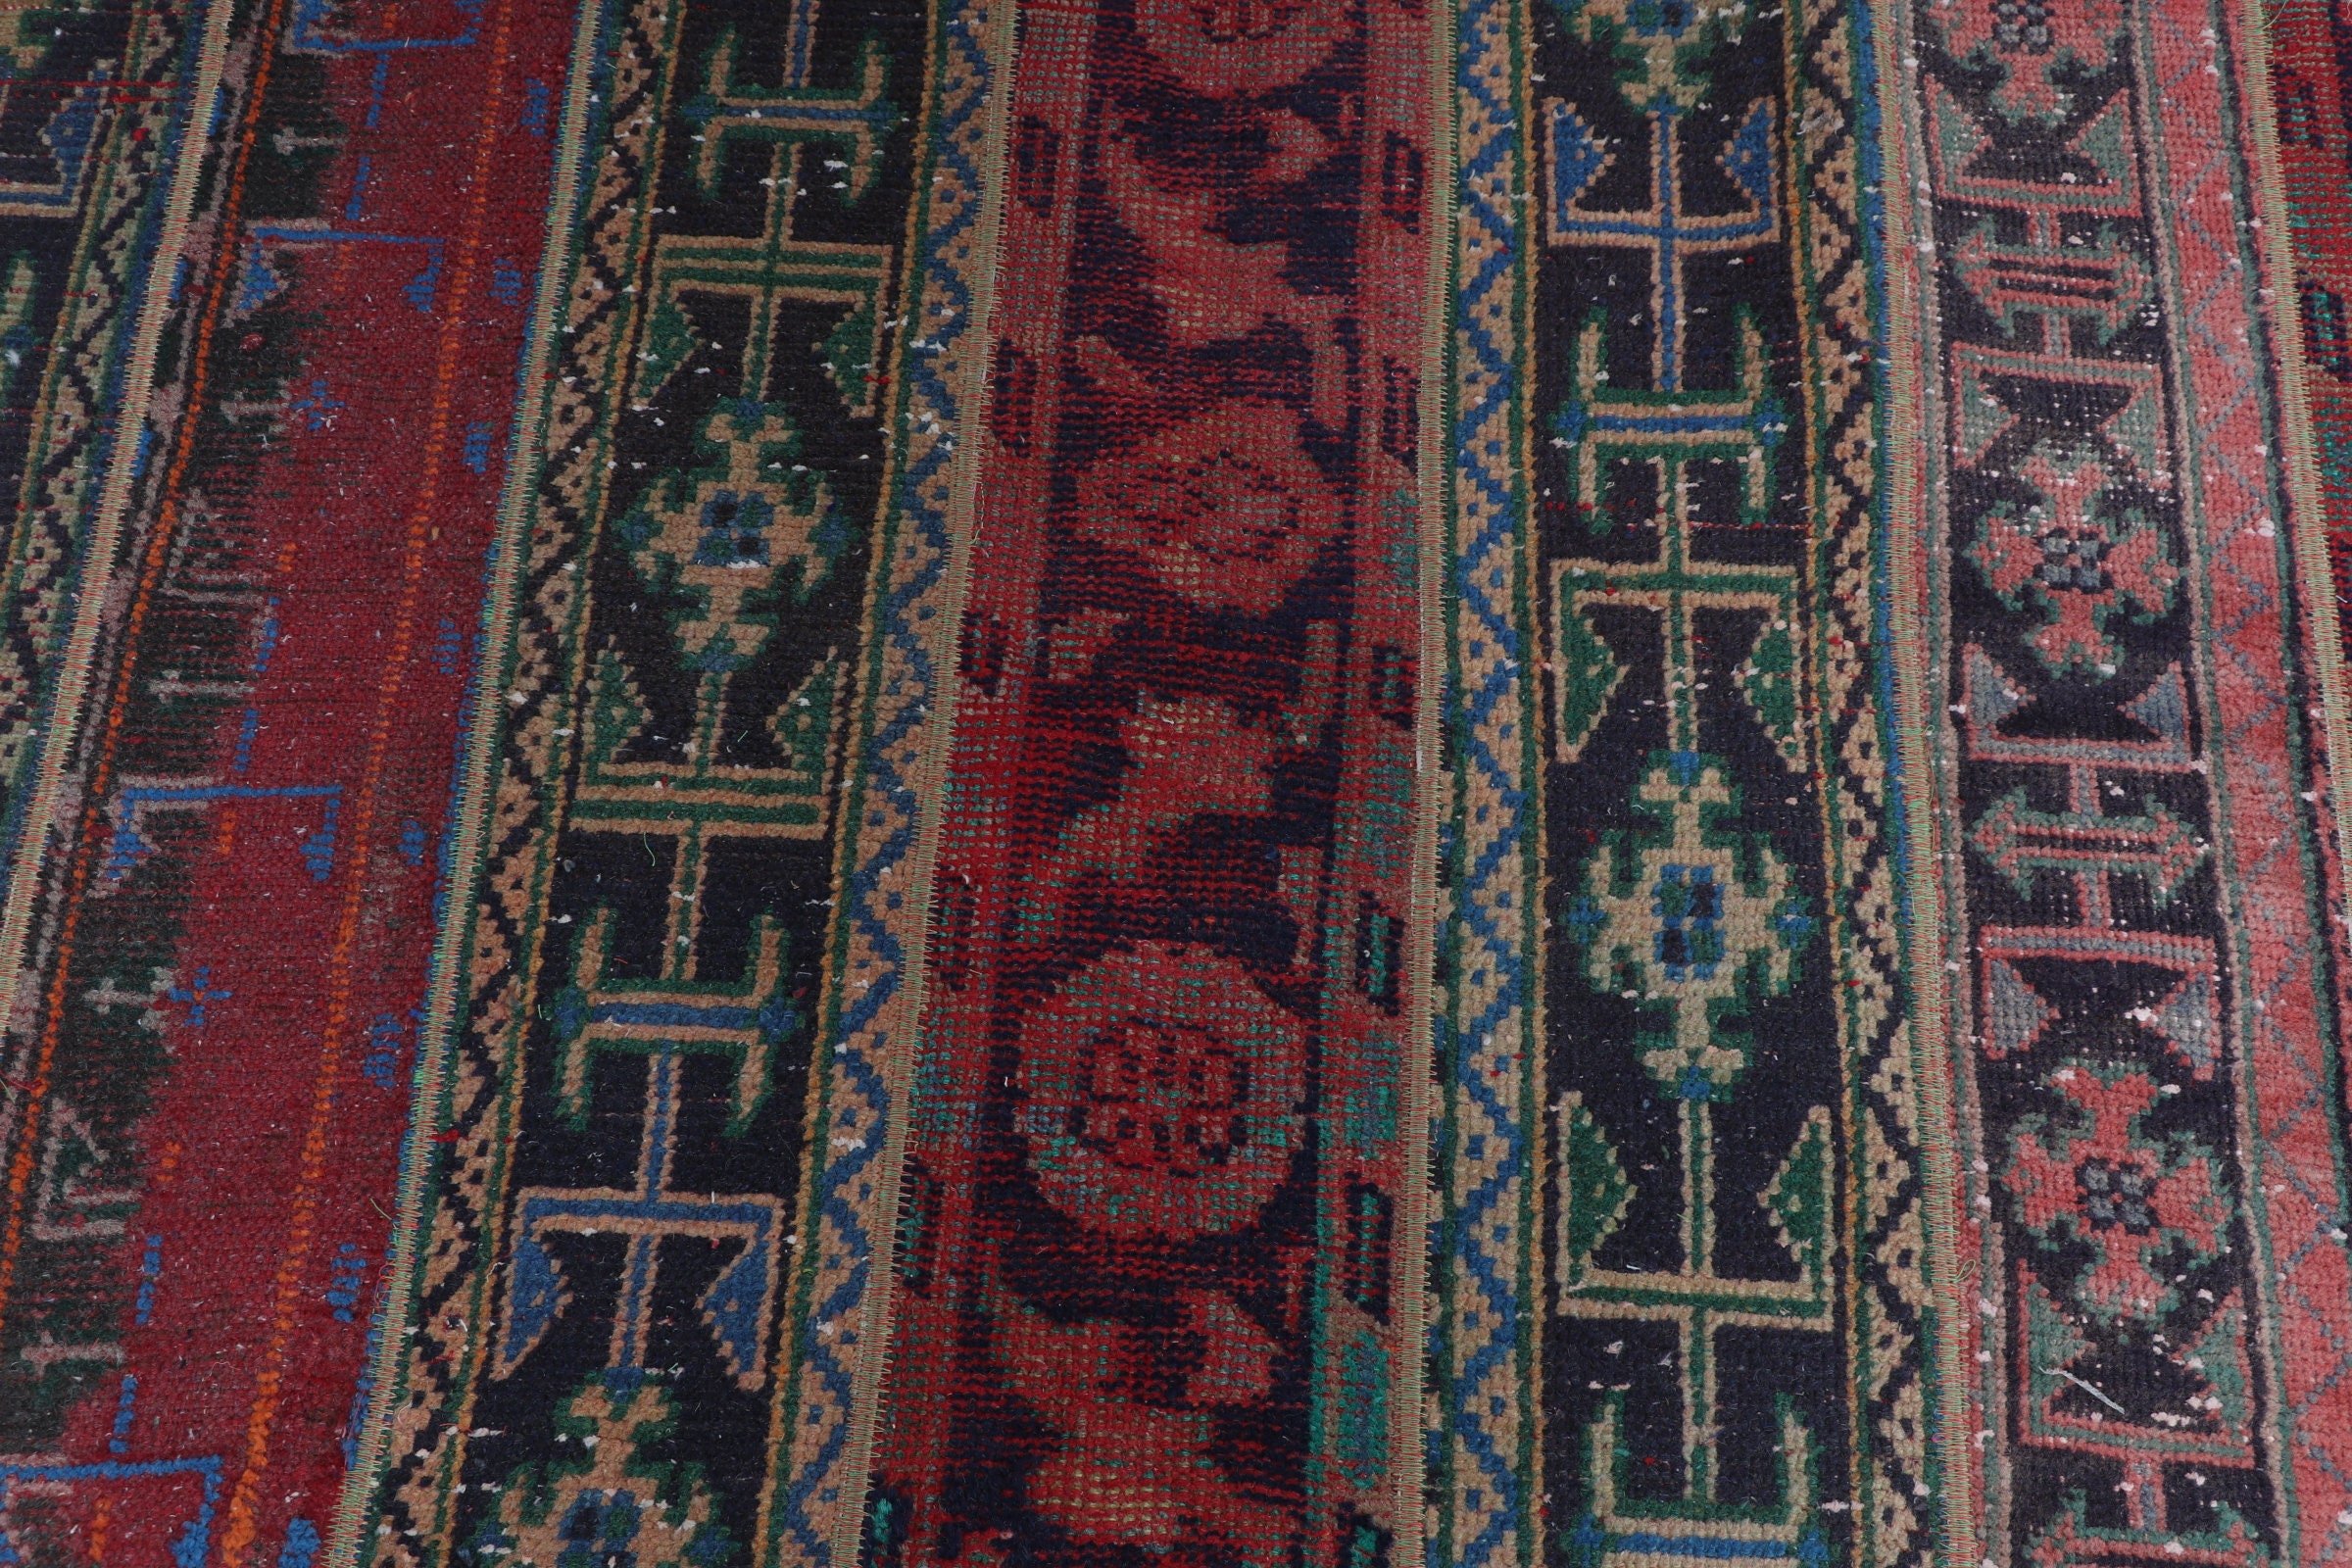 Bedroom Rug, Vintage Rug, Rugs for Hallway, Corridor Rug, Stair Rugs, Moroccan Rug, Turkish Rug, Red Floor Rugs, 2.9x7.3 ft Runner Rug